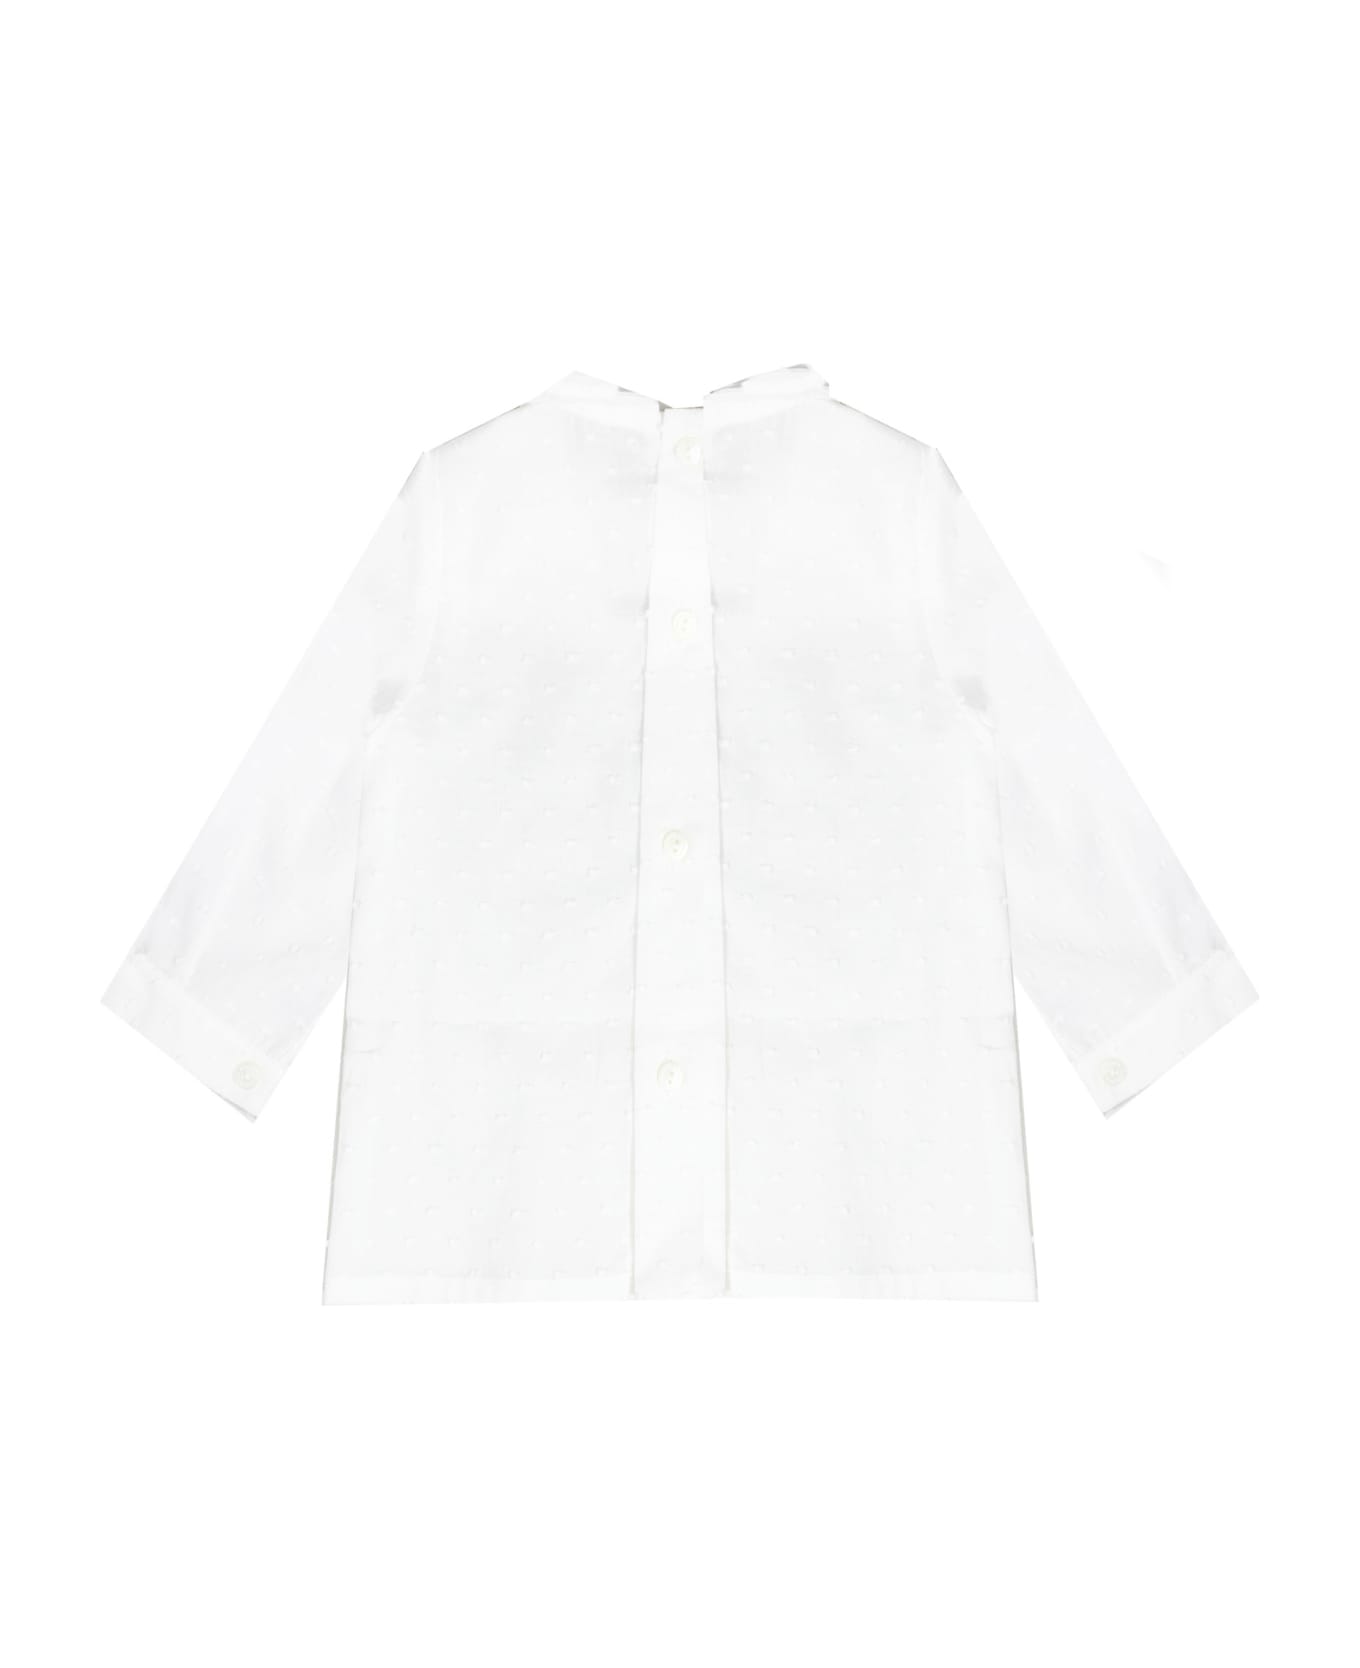 La stupenderia Cotton Shirt - White シャツ